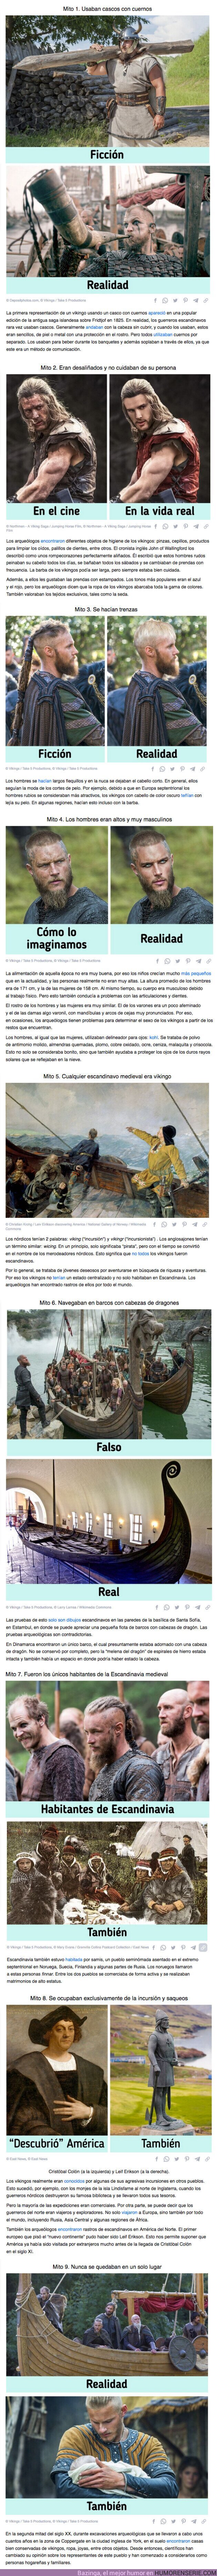 83253 - GALERÍA: 9 Mitos sobre los vikingos a quienes el cine nos hizo considerar erróneamente como unos burdos bárbaros